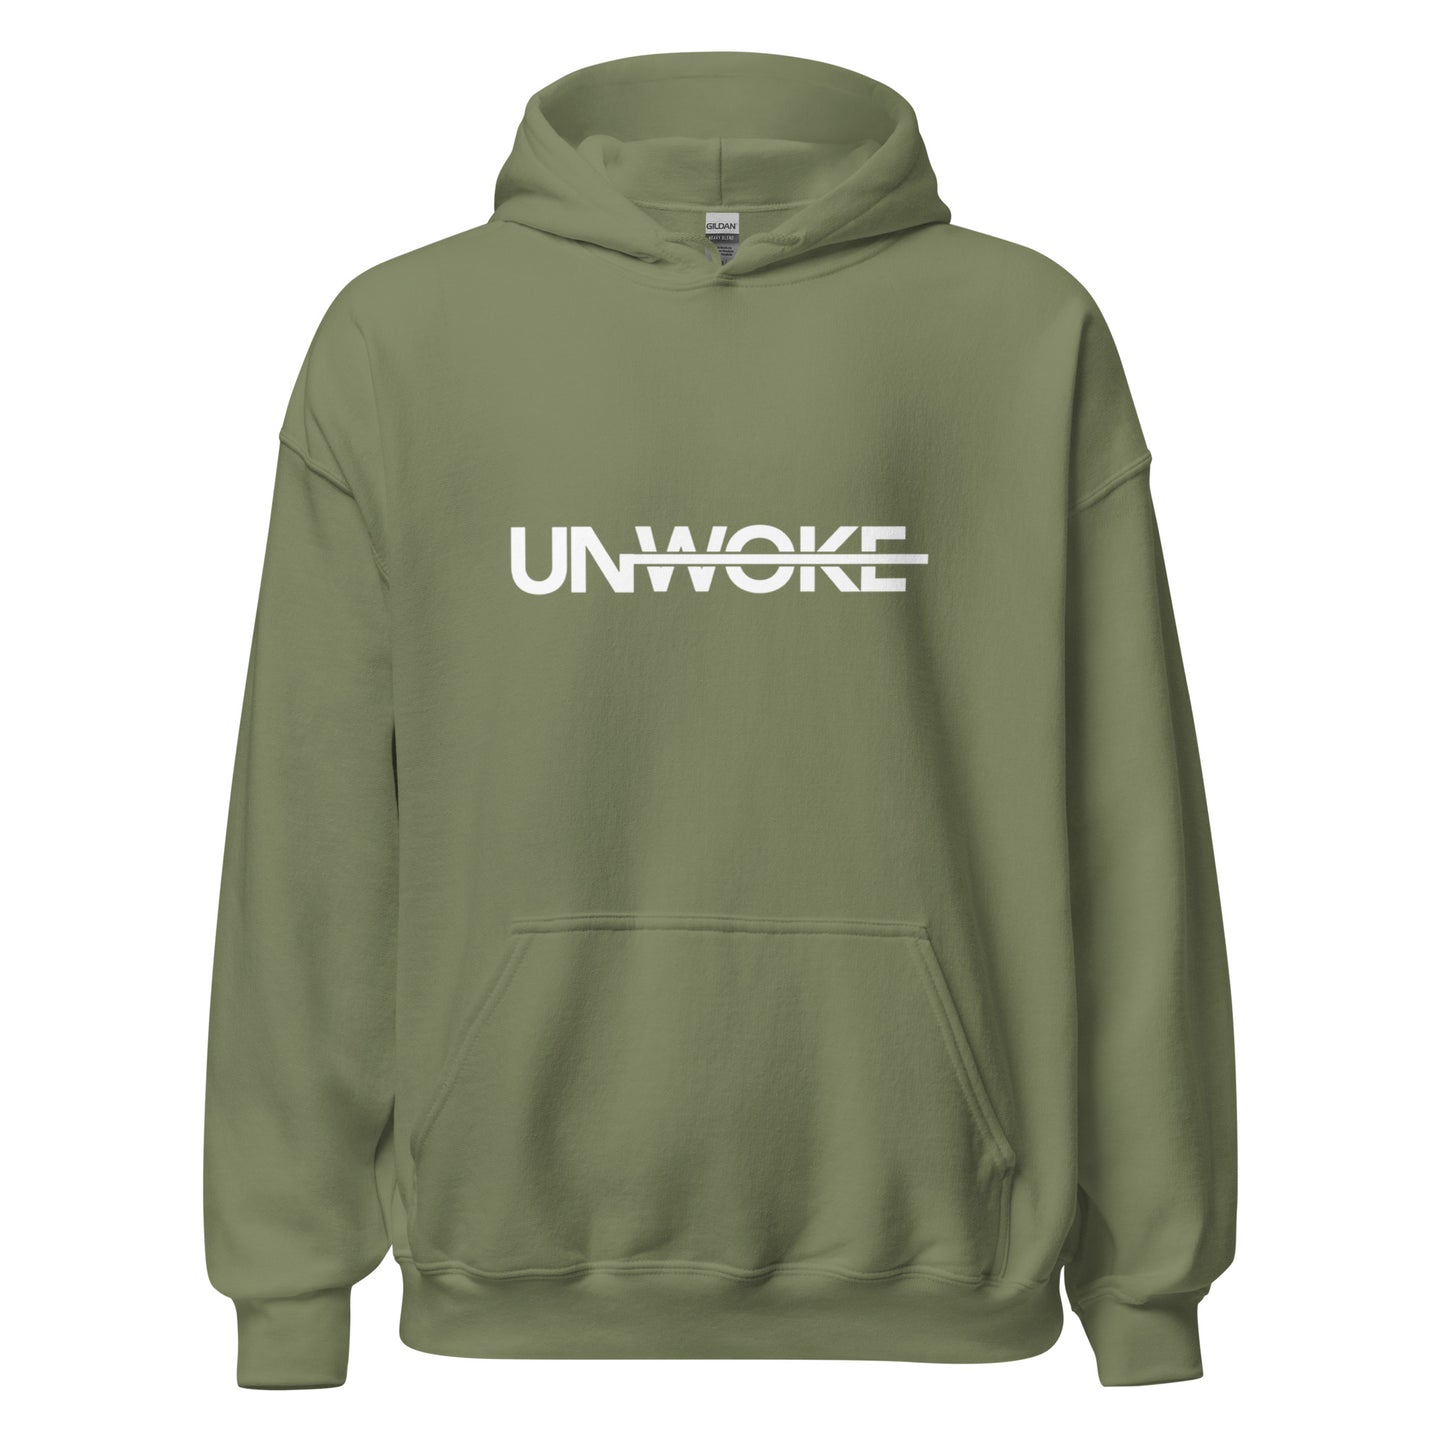 Unwoke Minimalist Green Unisex Hoodie